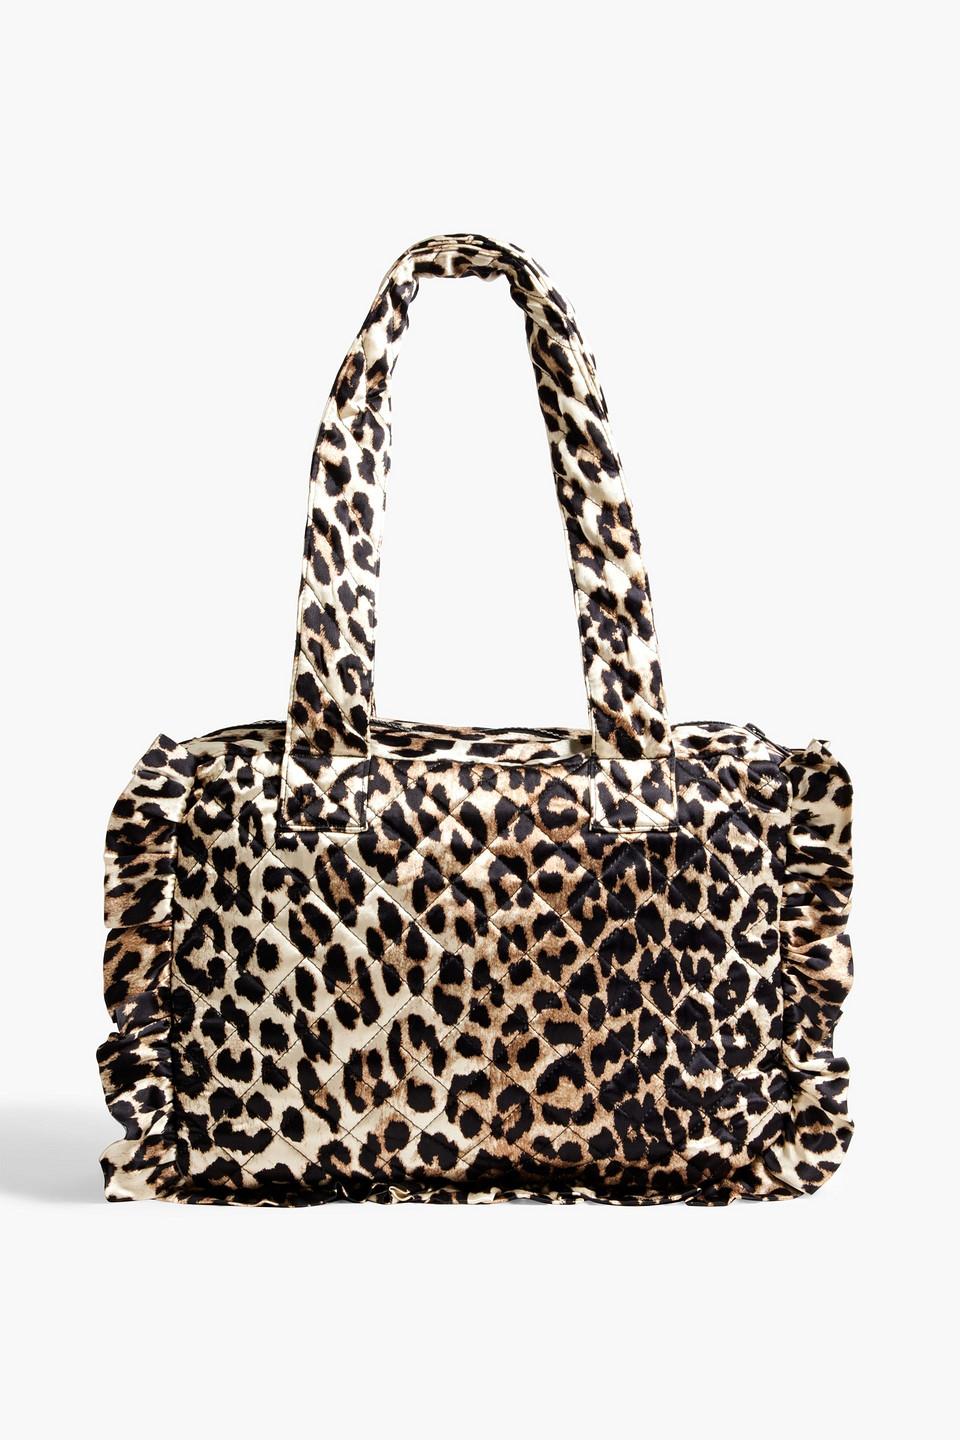 23814円 【オープニング大セール】 ガニー レディース トートバッグ バッグ leopard-print tote bag 943 LEOPARD